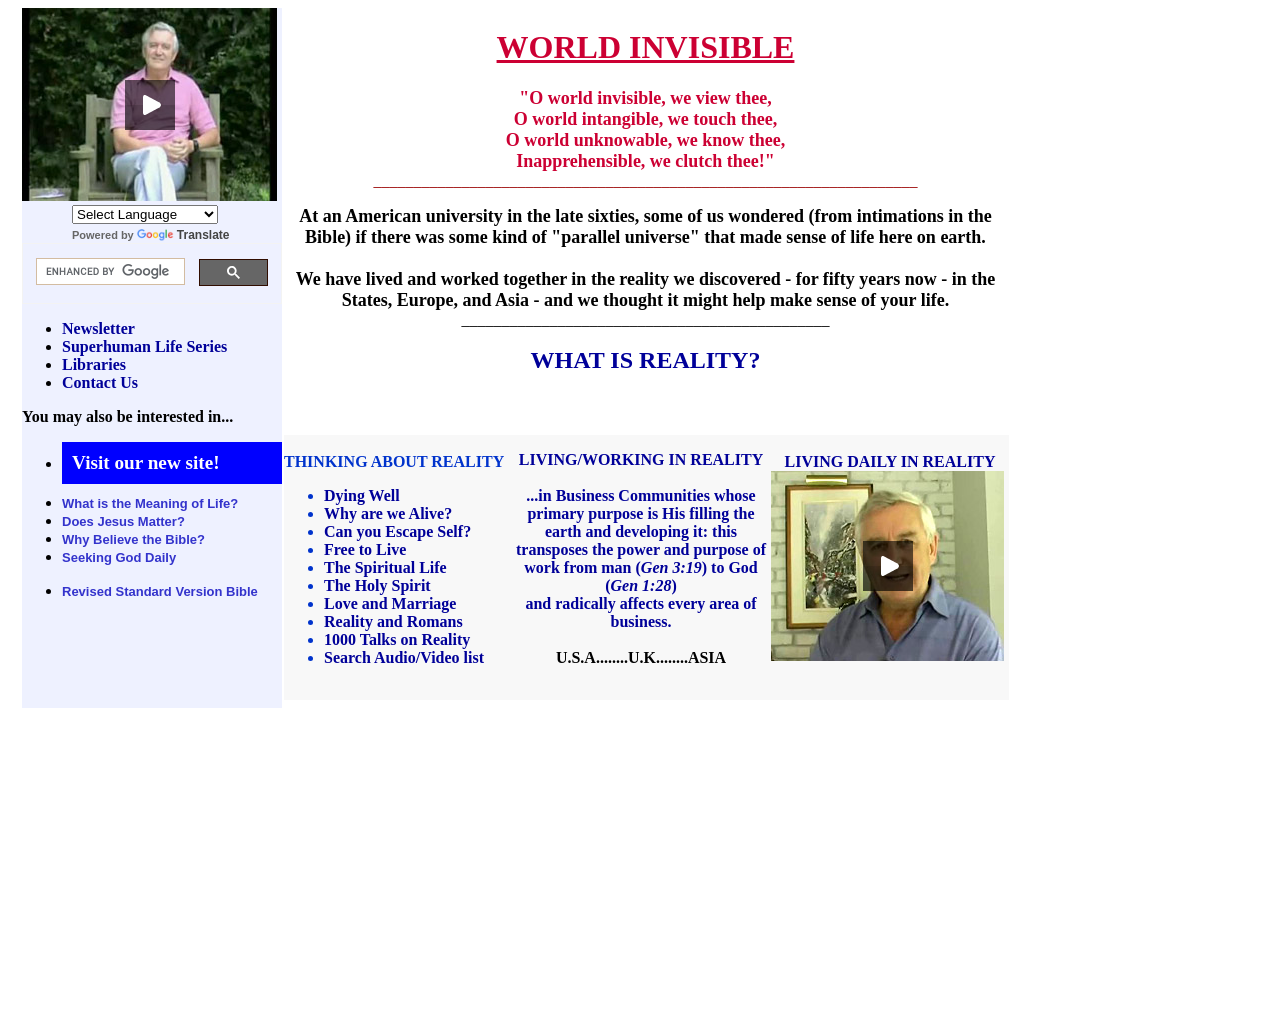 worldinvisible.com